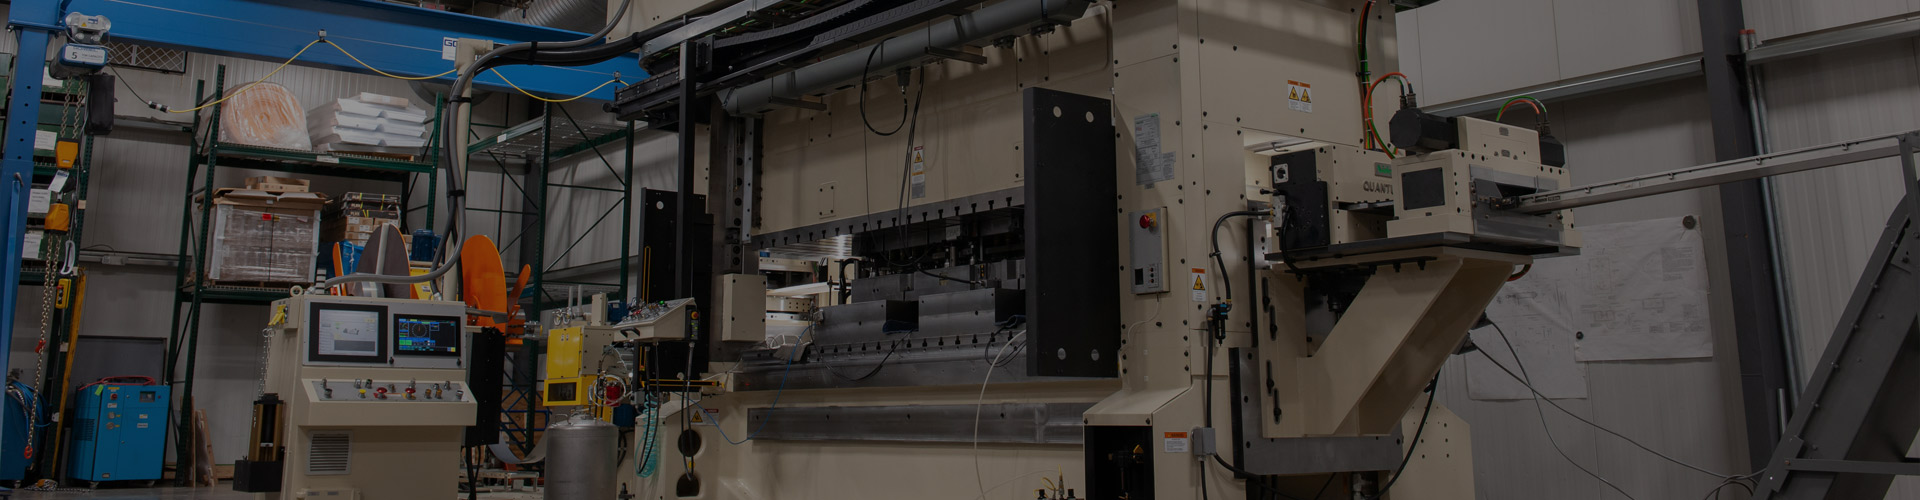 Nidec Press Automation Machinery